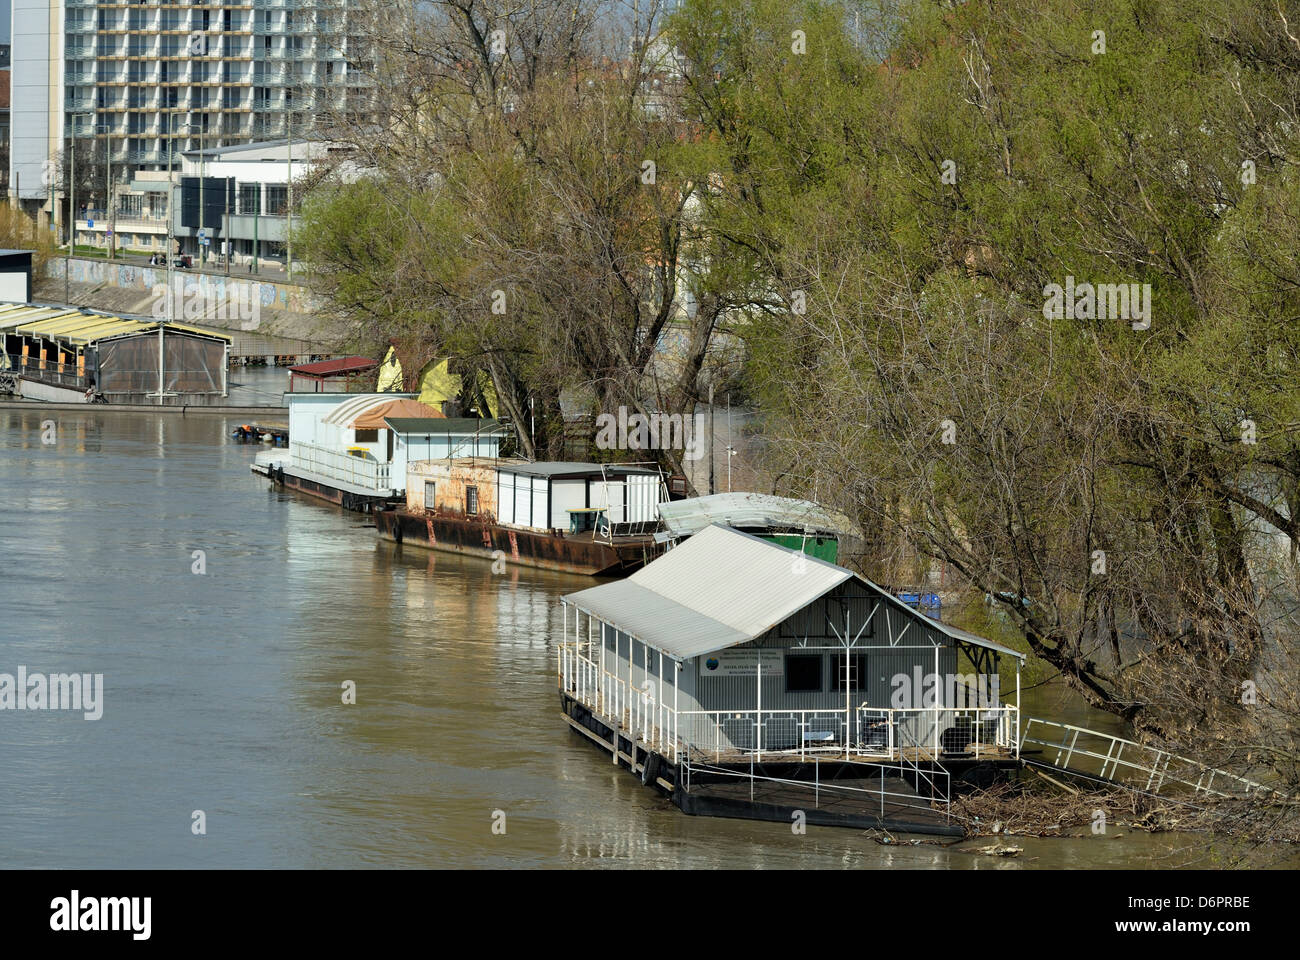 Le inondazioni del fiume Tisza a Szeged Ungheria Paesi CEE case battello Foto Stock